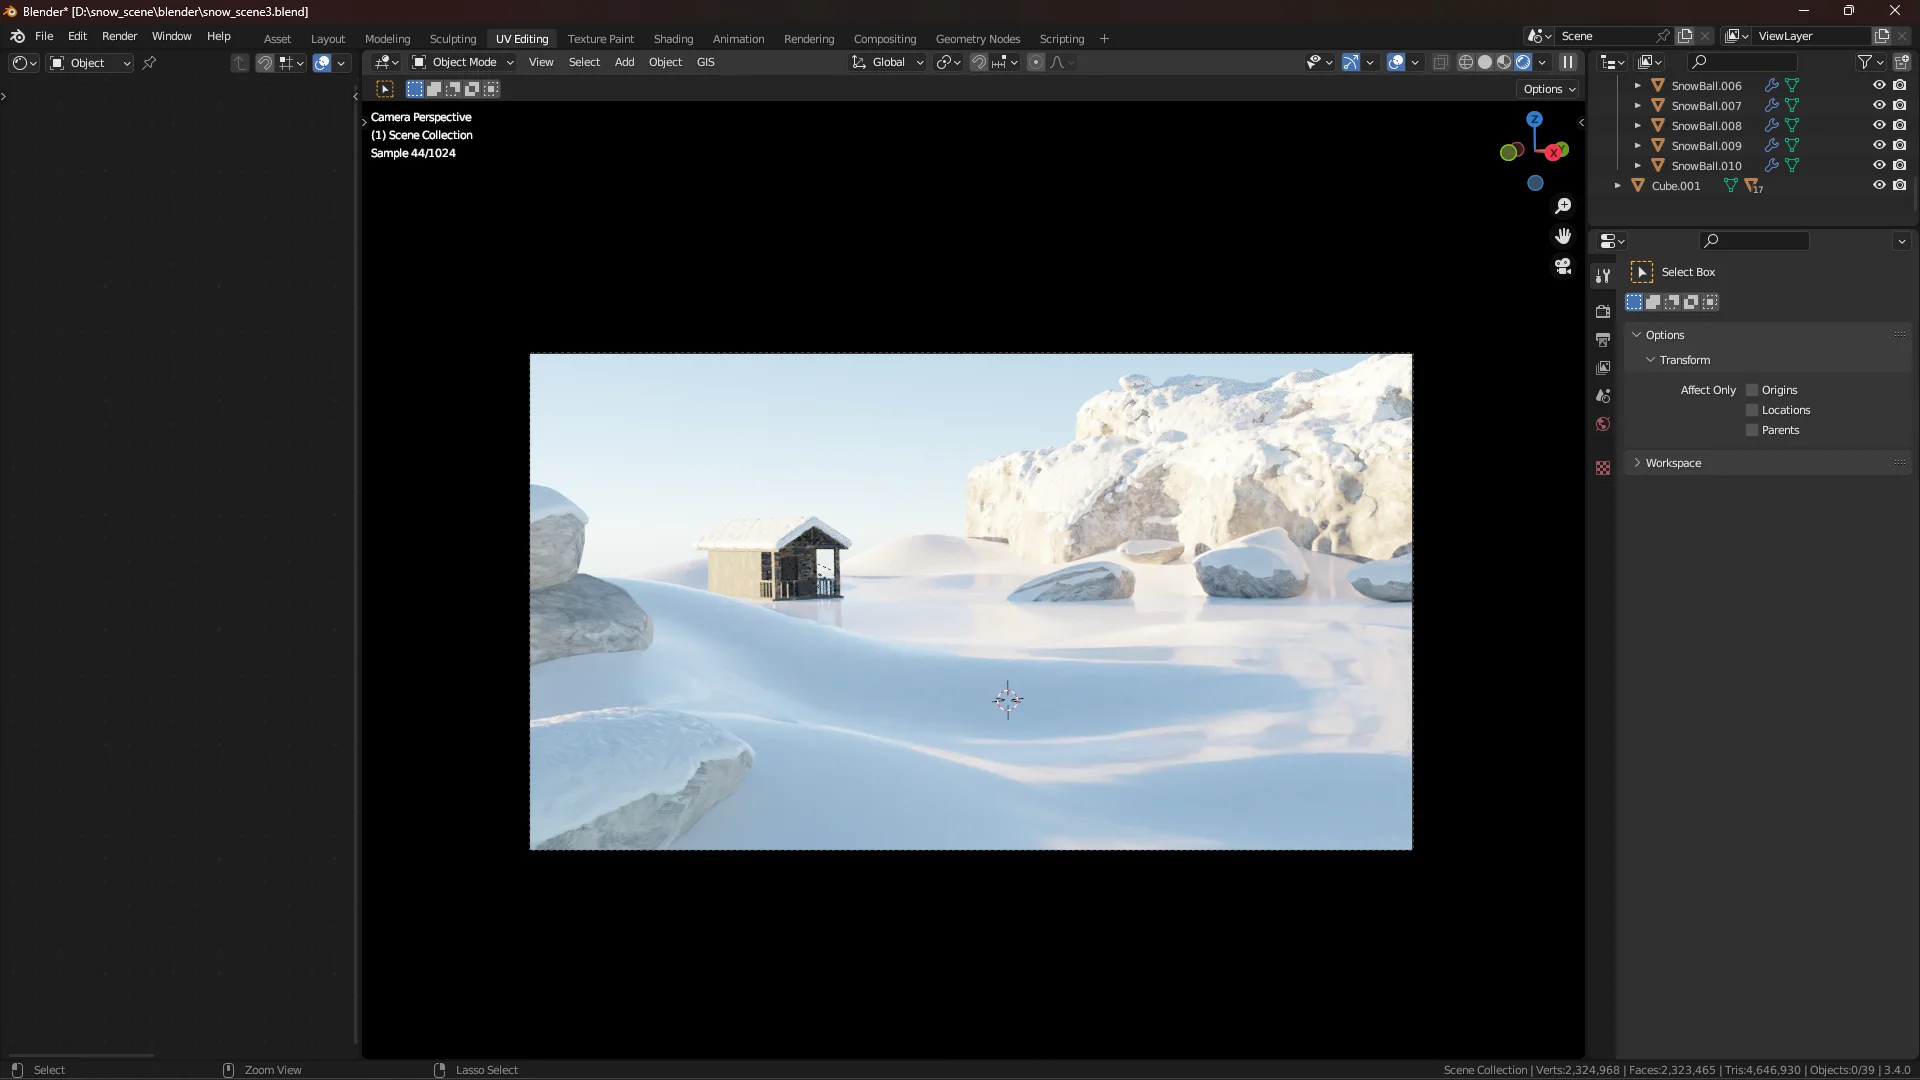 Schneelandschaft - 3D-Schnee-Szenen